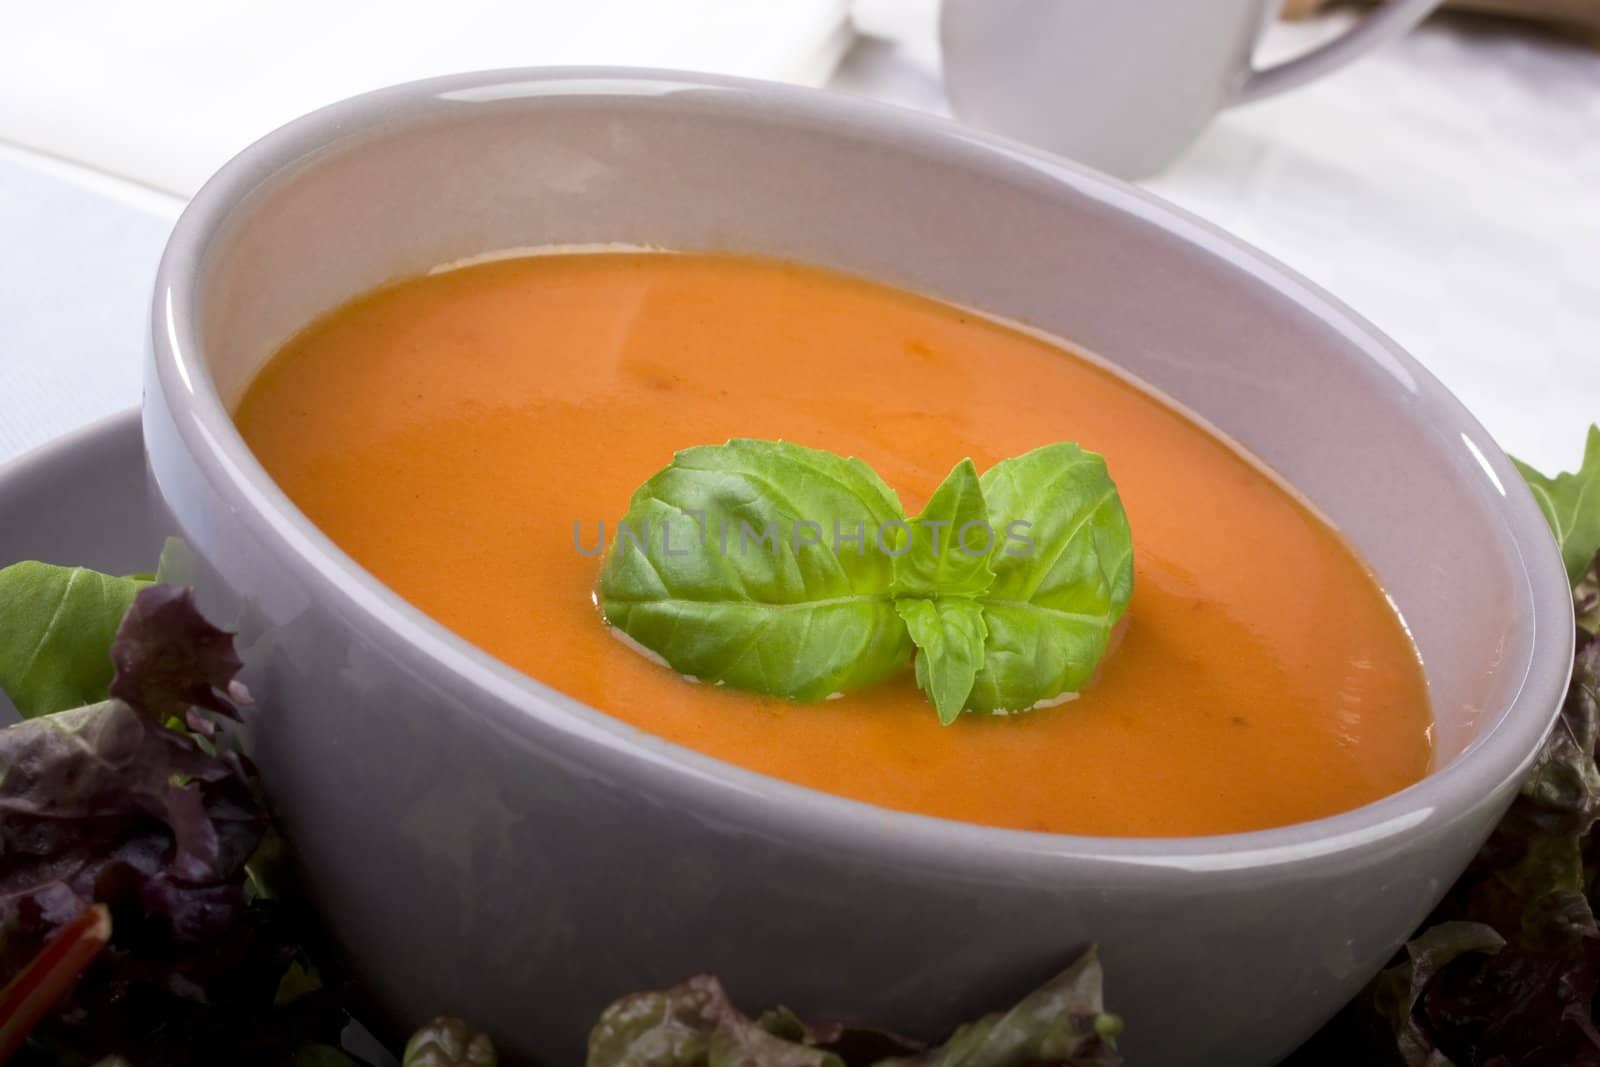 Tomato Soup with Basil Garnish by charlotteLake